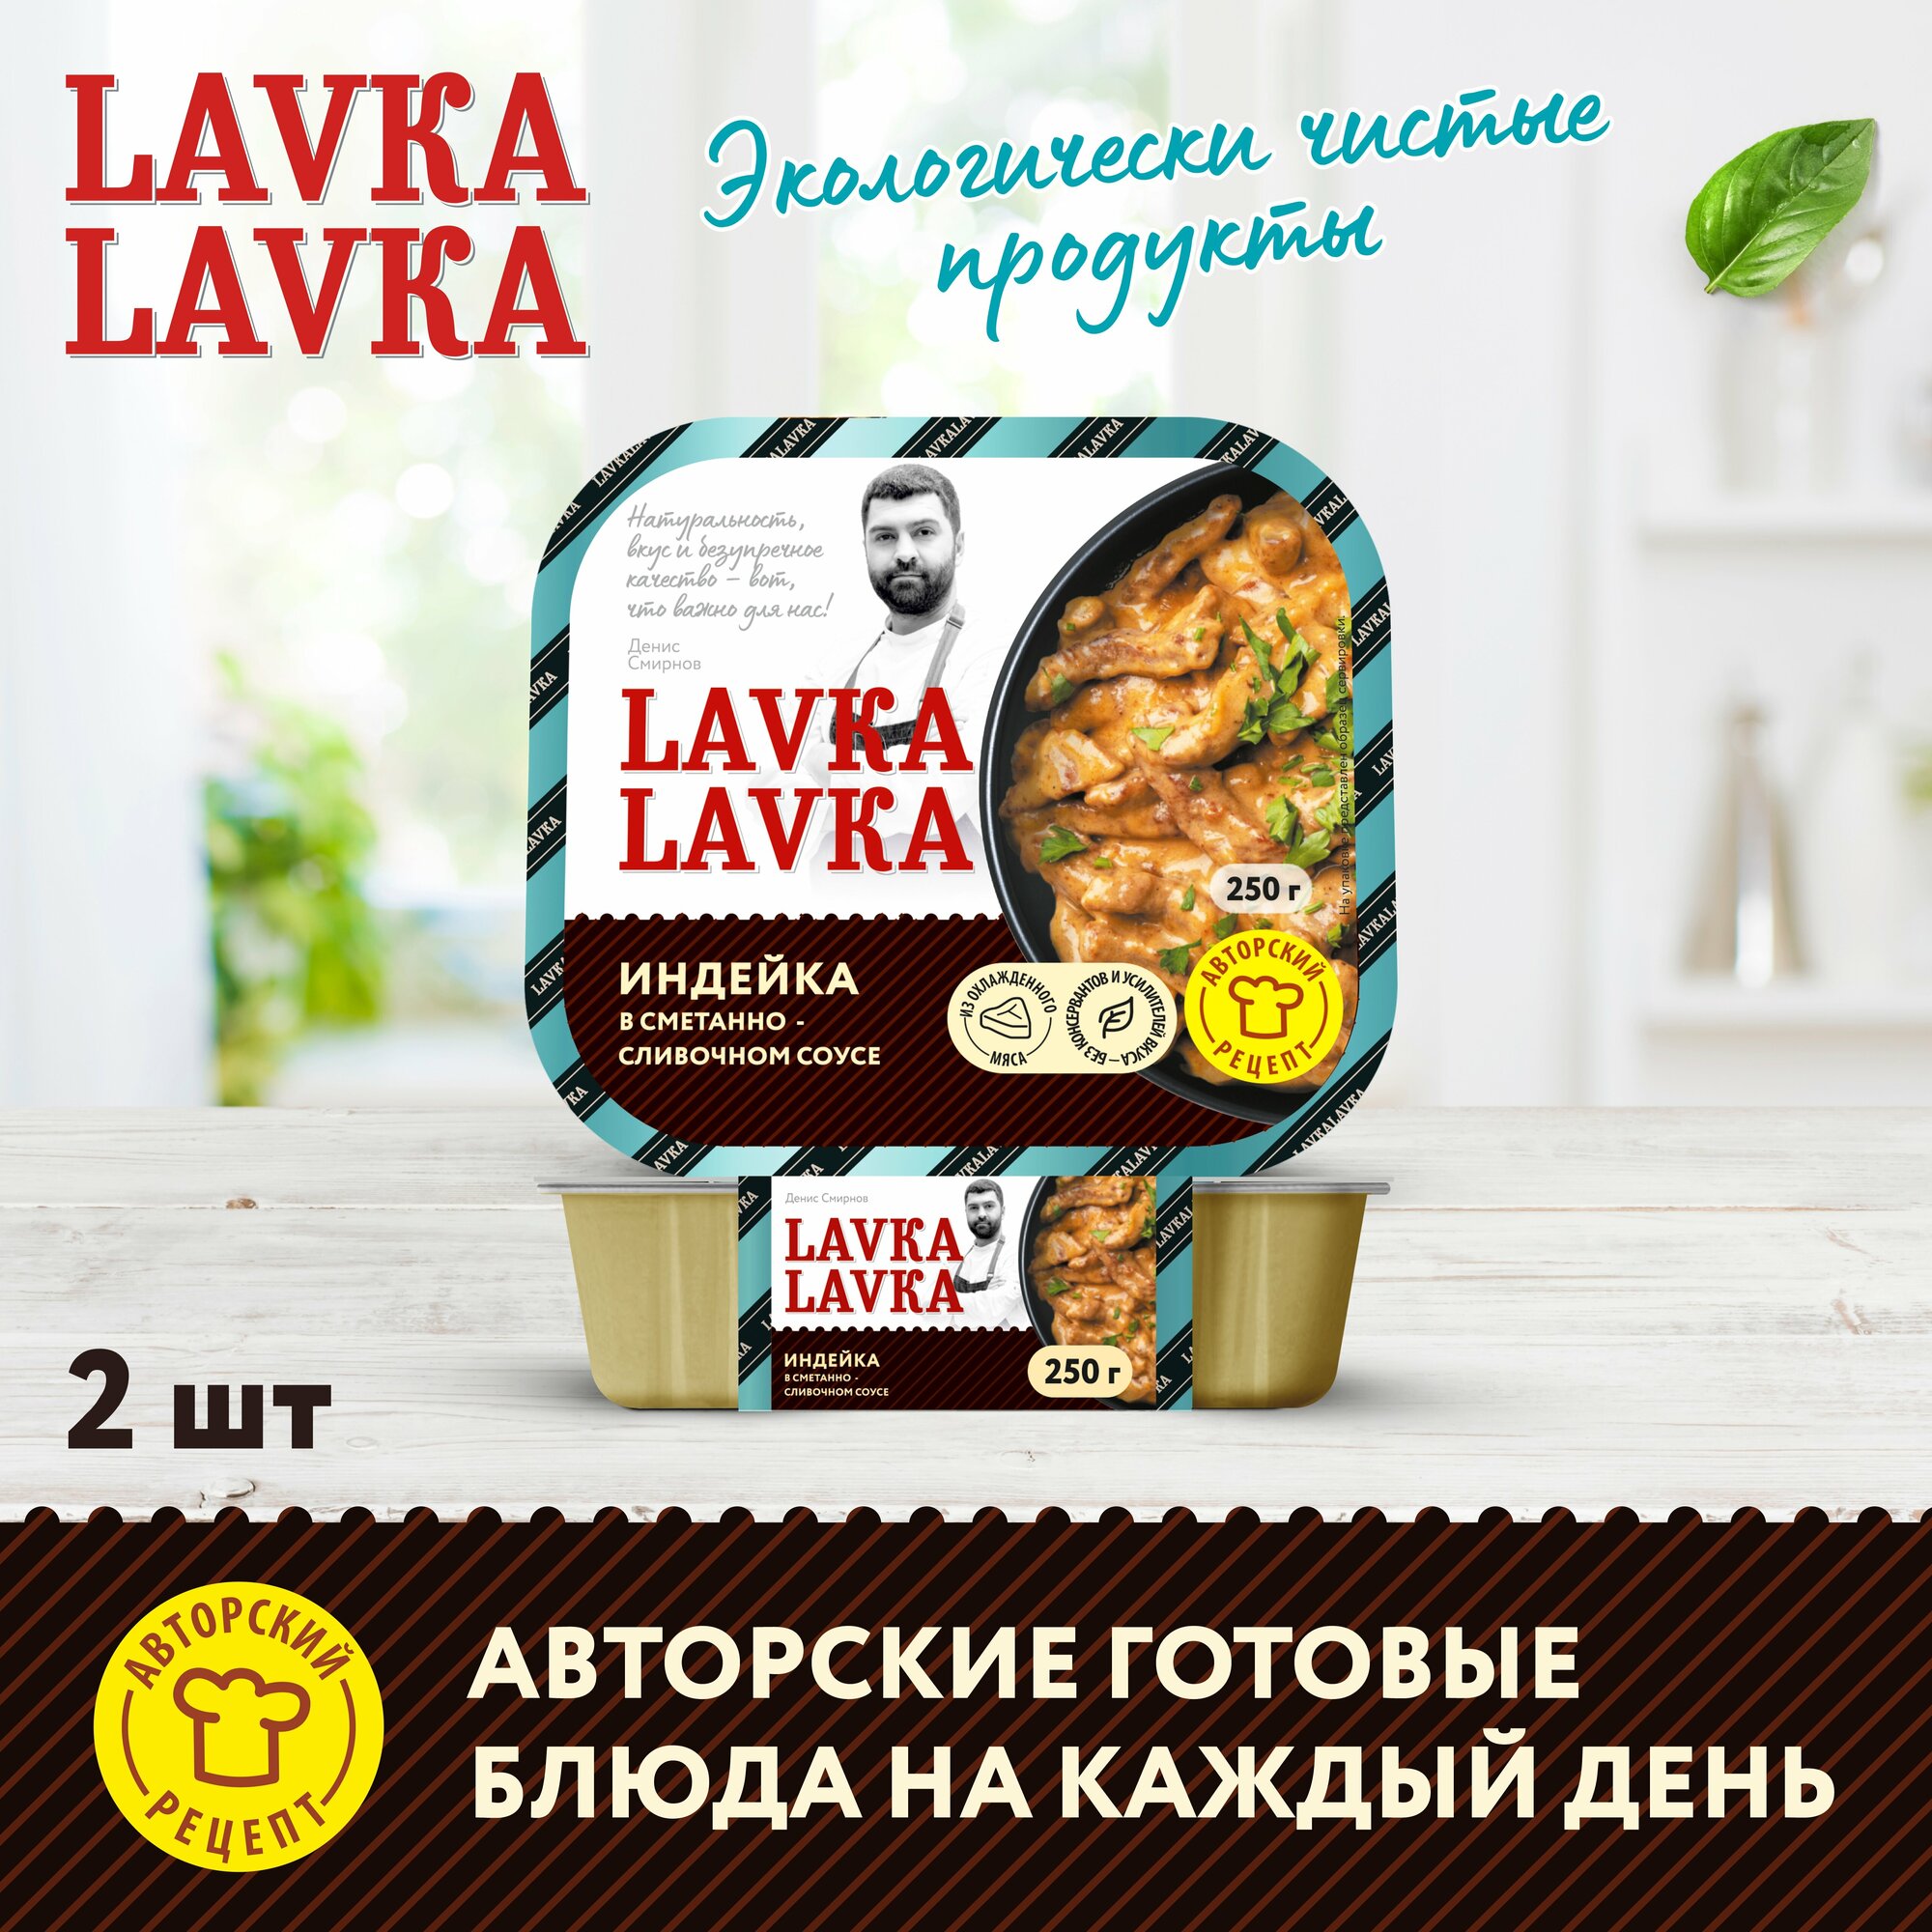 Индейка в сметанно-сливочном соусе 2 уп. по 250 гр. (LavkaLavka)